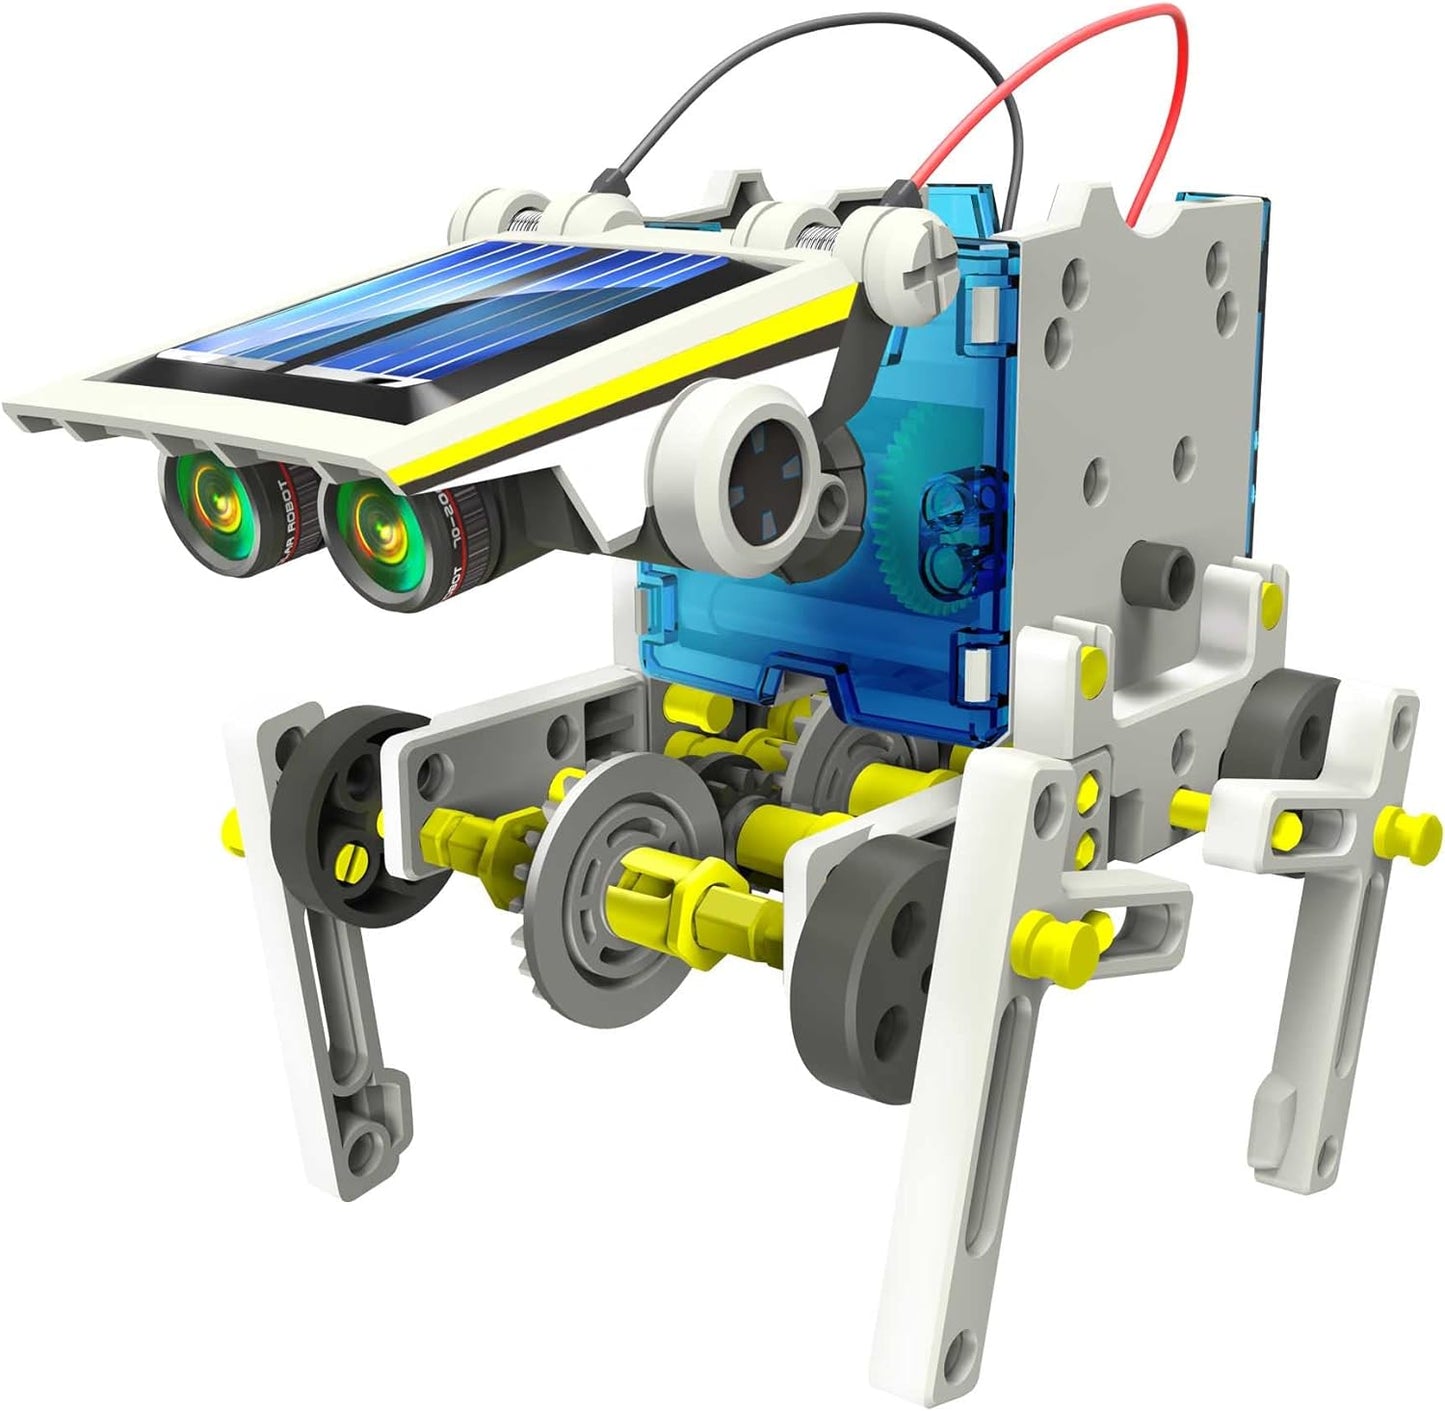 14 in 1 Solar Robot Kit Educational Solar Power Robot